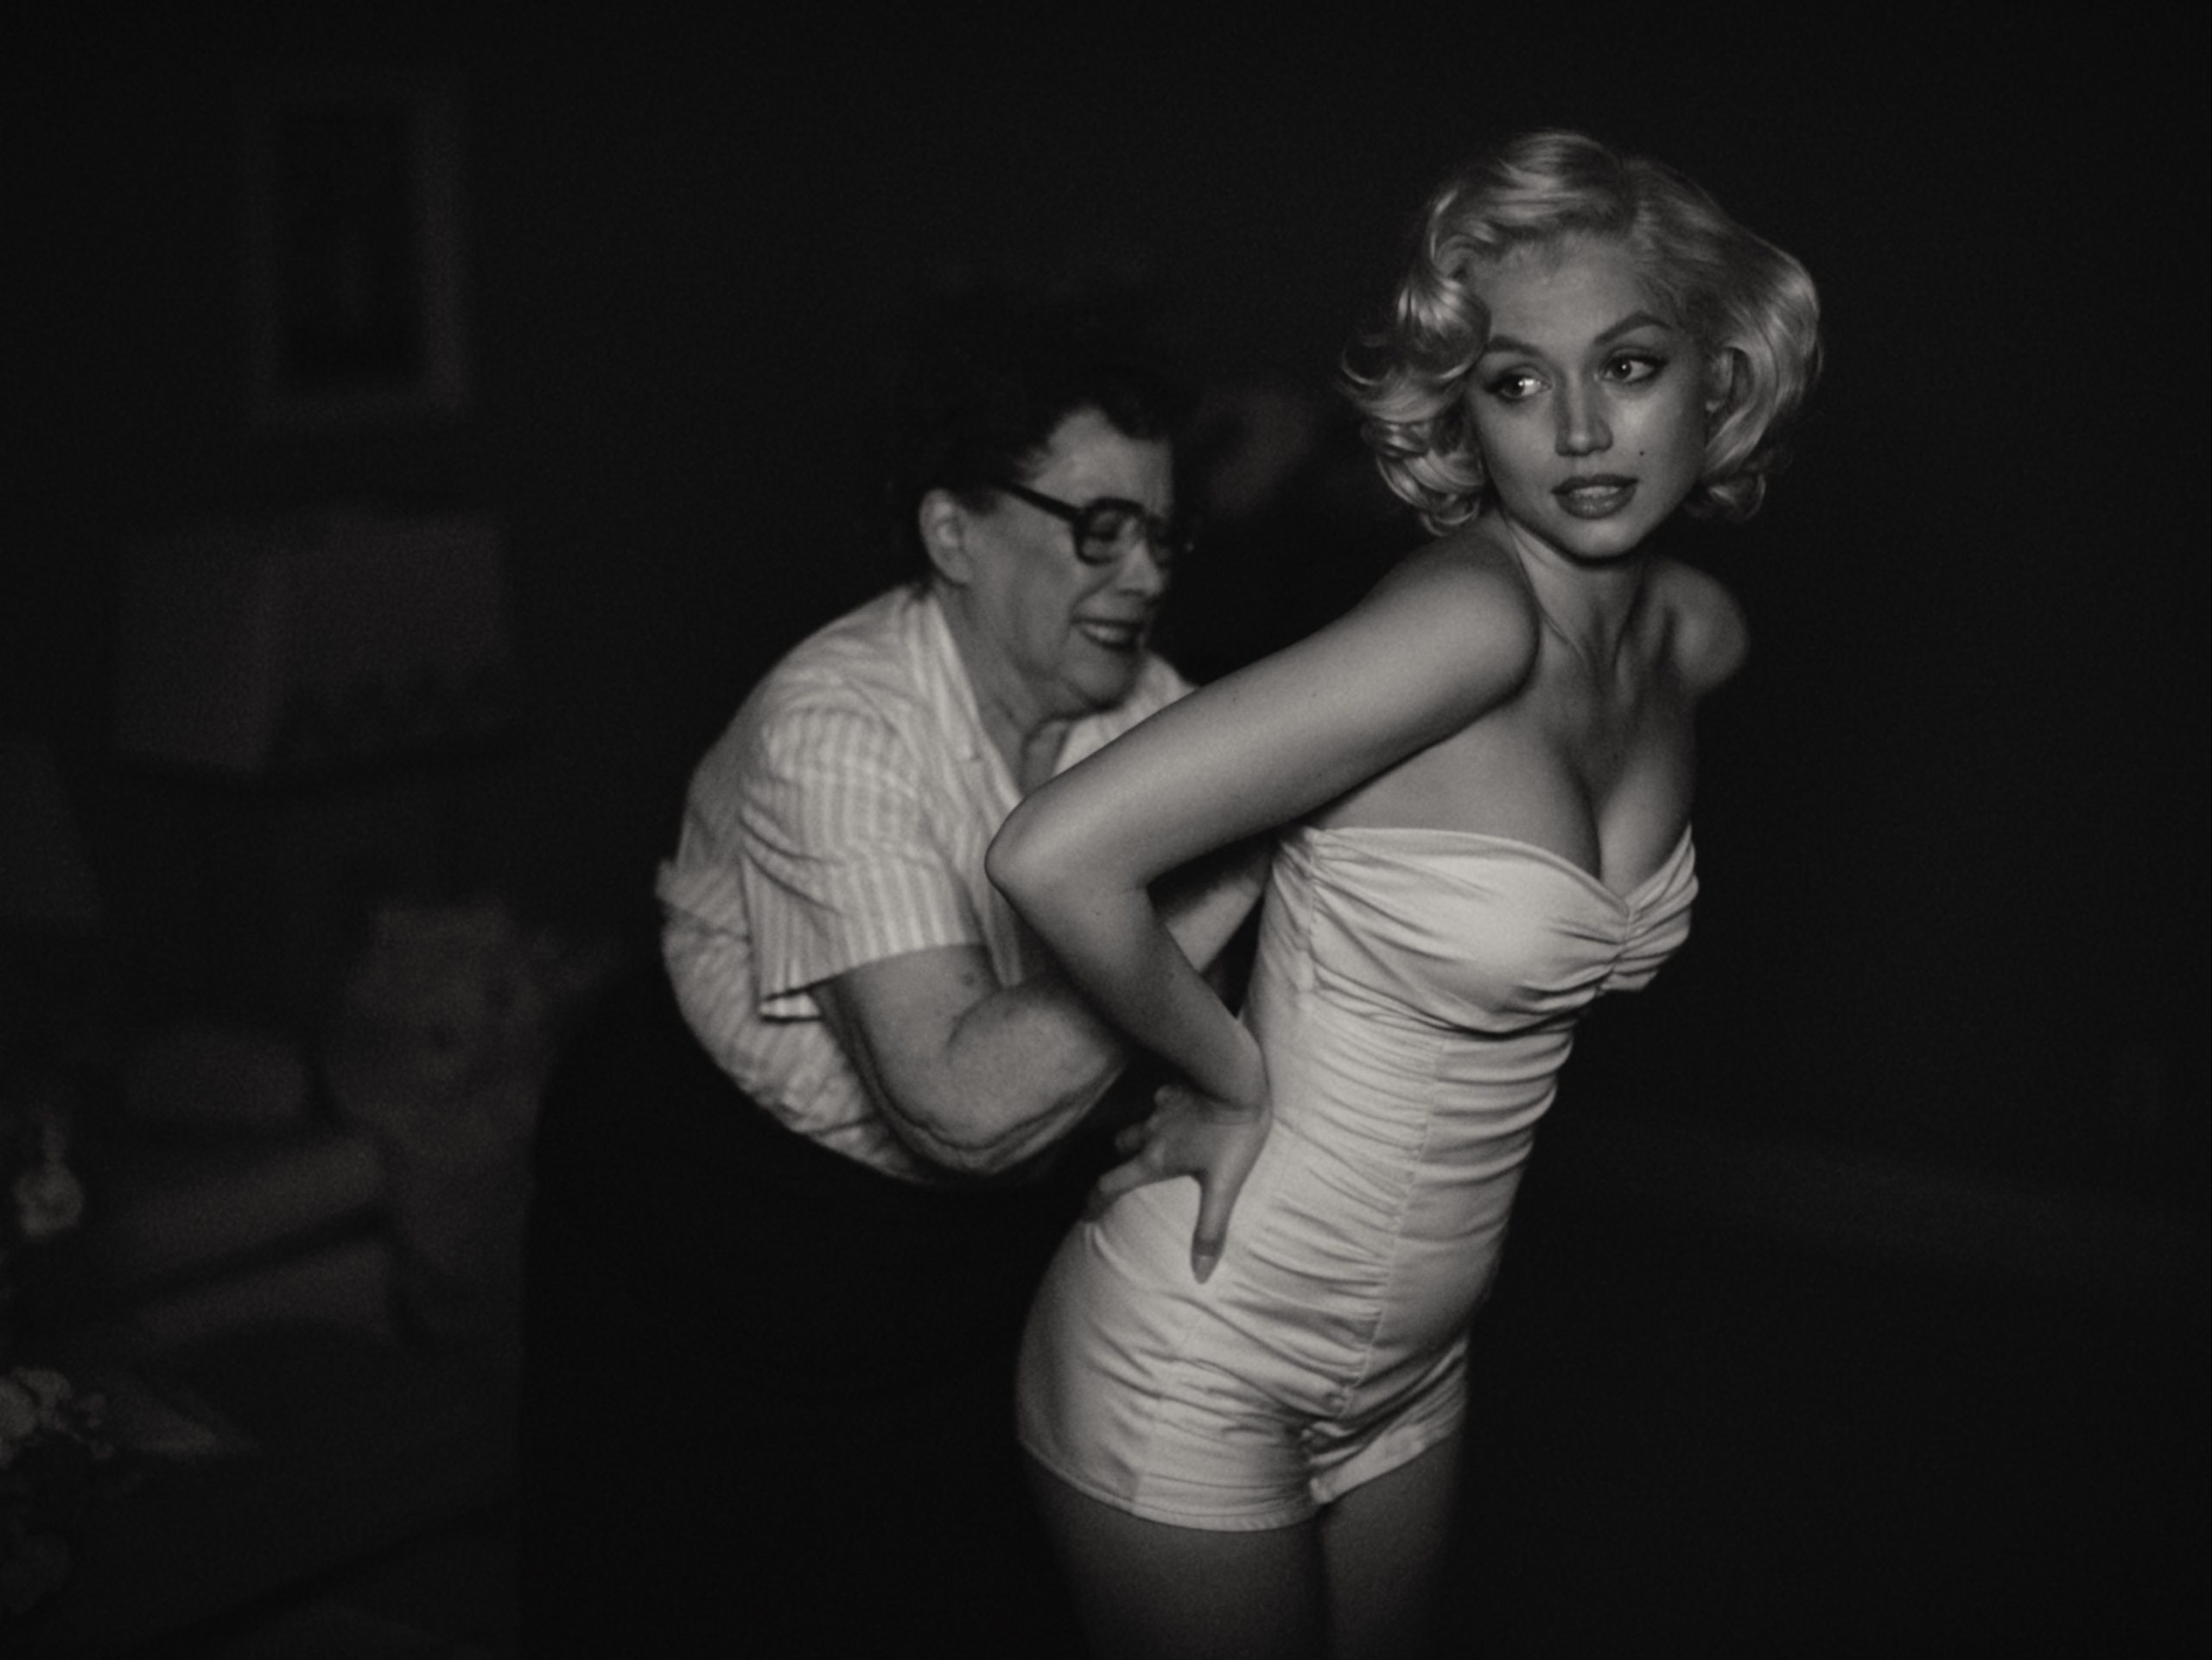 Arma de Armas als Marilyn Monroe im Netflix-Film "Blonde" | Bildquelle: Arma de Armas als Marilyn Monroe im Netflix-Film "Blonde" © Netflix | Bilder sind in der Regel urheberrechtlich geschützt